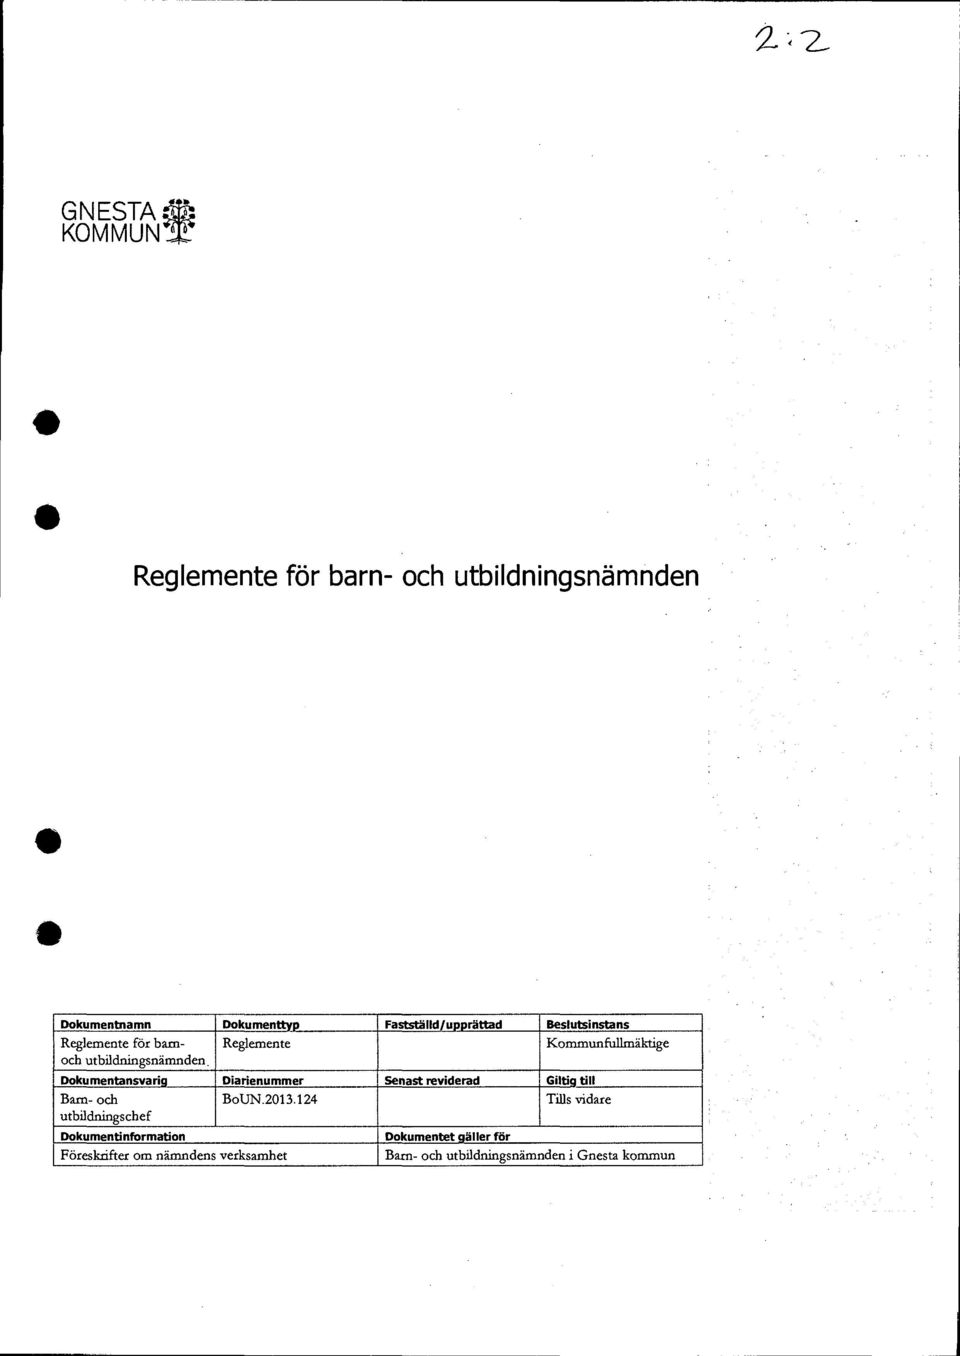 Diarienummer Senast reviderad Giltig till Barn- och utbildningschef Dokumentinformation BoUN.2013.